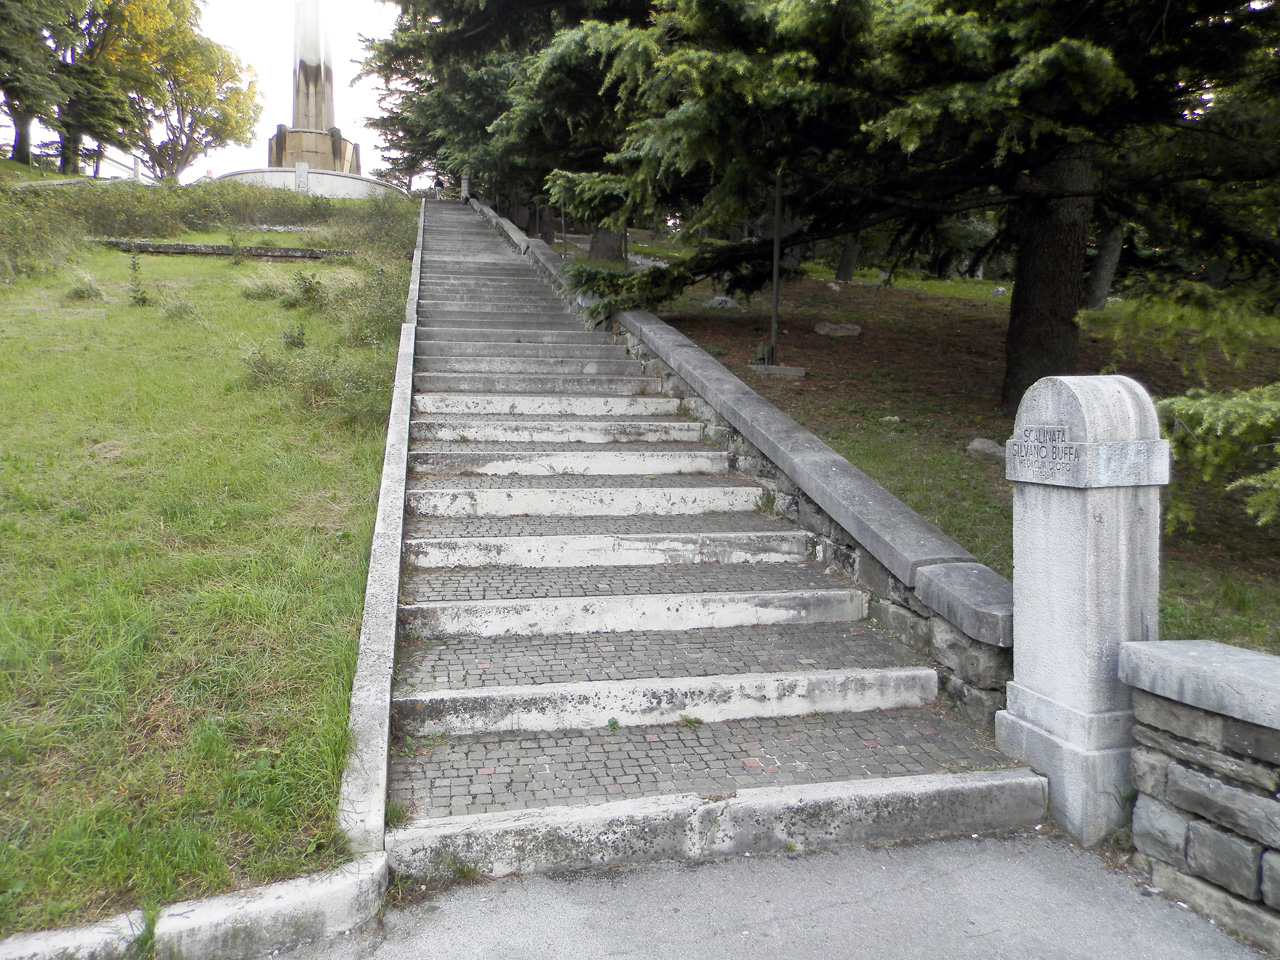 Parco della Rimembranza di Trieste (parco, commemorativo) - Trieste (TS) 